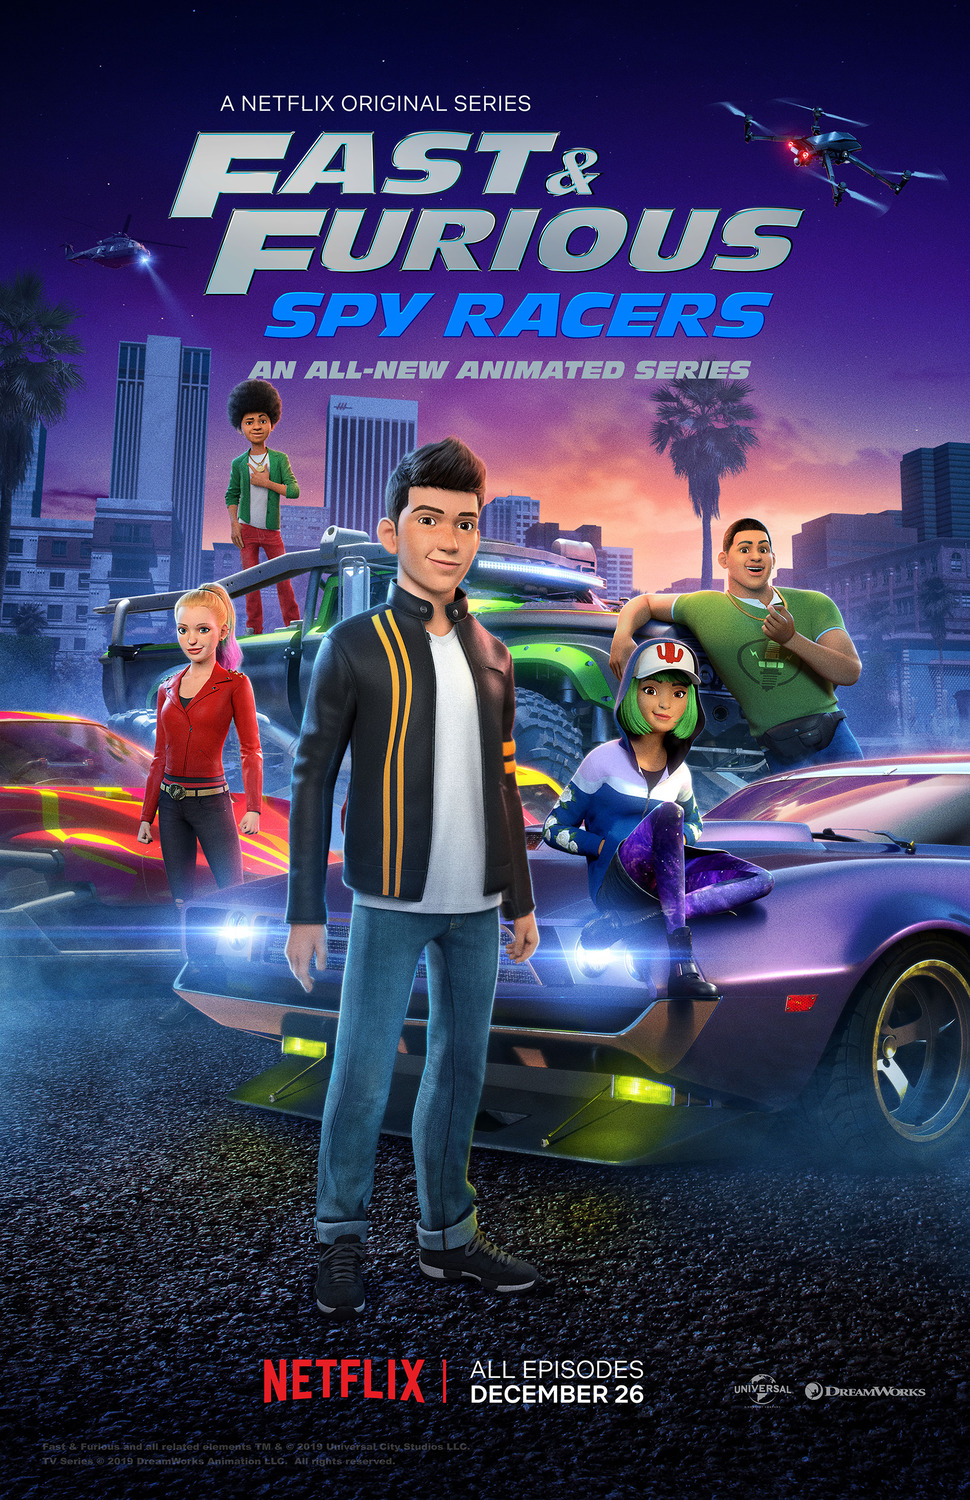 ดูหนังออนไลน์ฟรี Fast & Furious Spy Racers Season 6 EP11 เร็วแรงทะลุนรก ซิ่งสยบโลก ซีซั่น 6 ตอนที่ 11